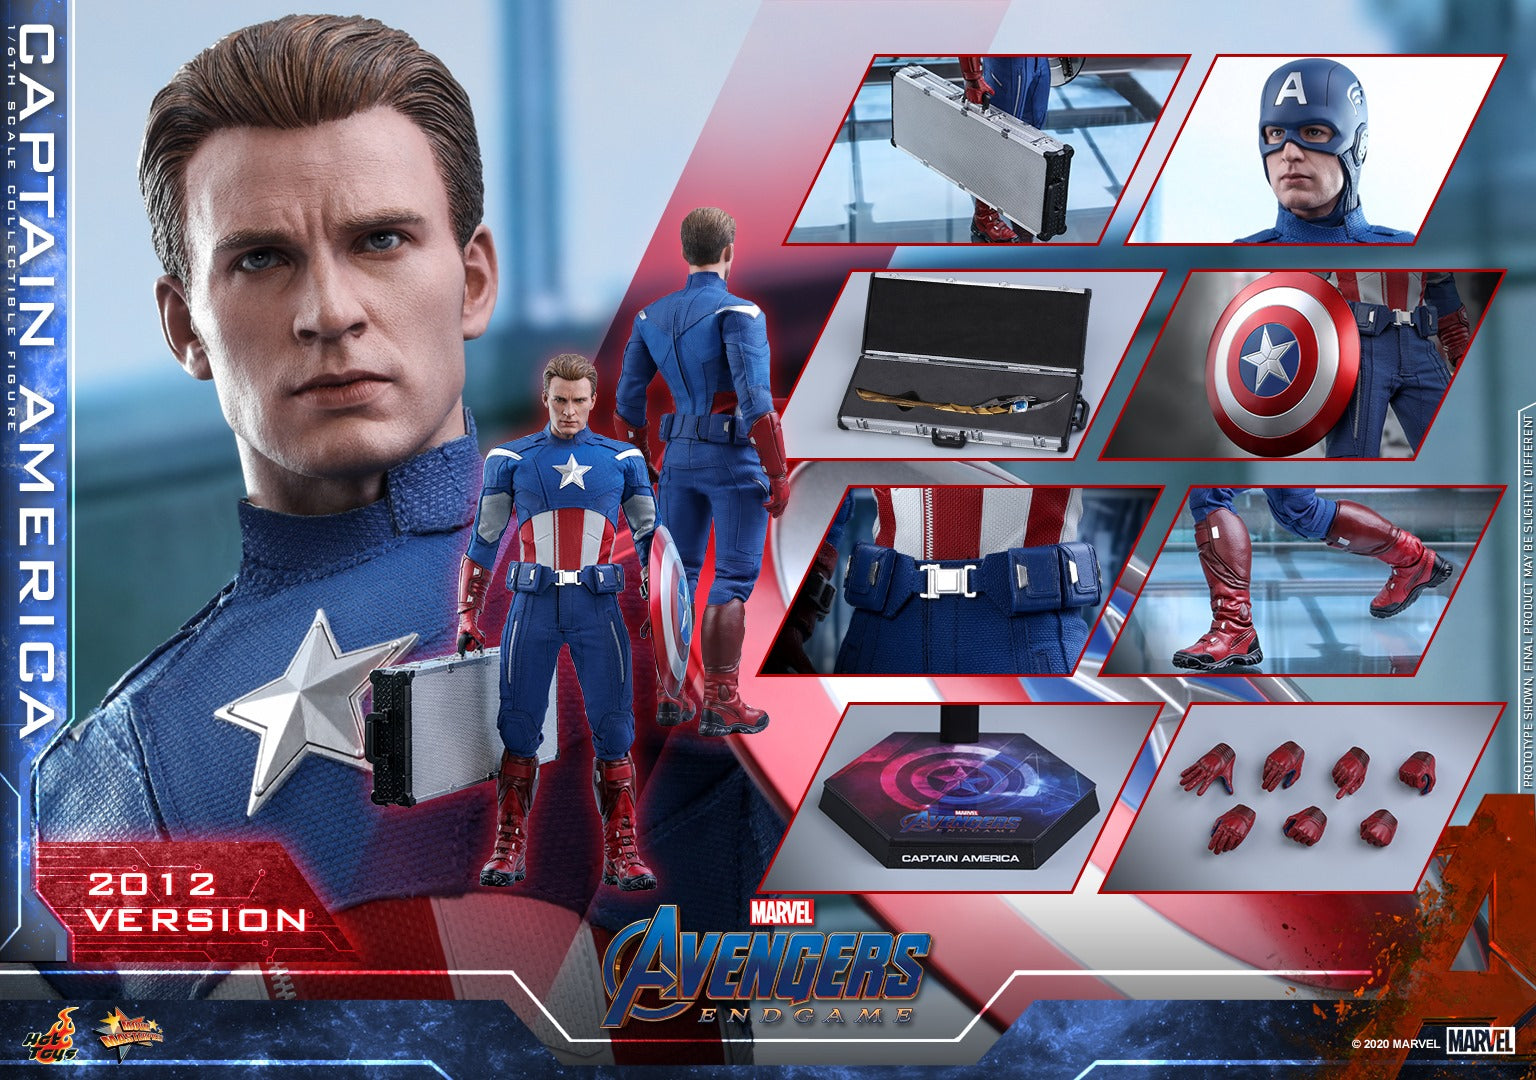 Hot Toys - MMS563 - Avengers: Endgame - Captain America (2012 Version)